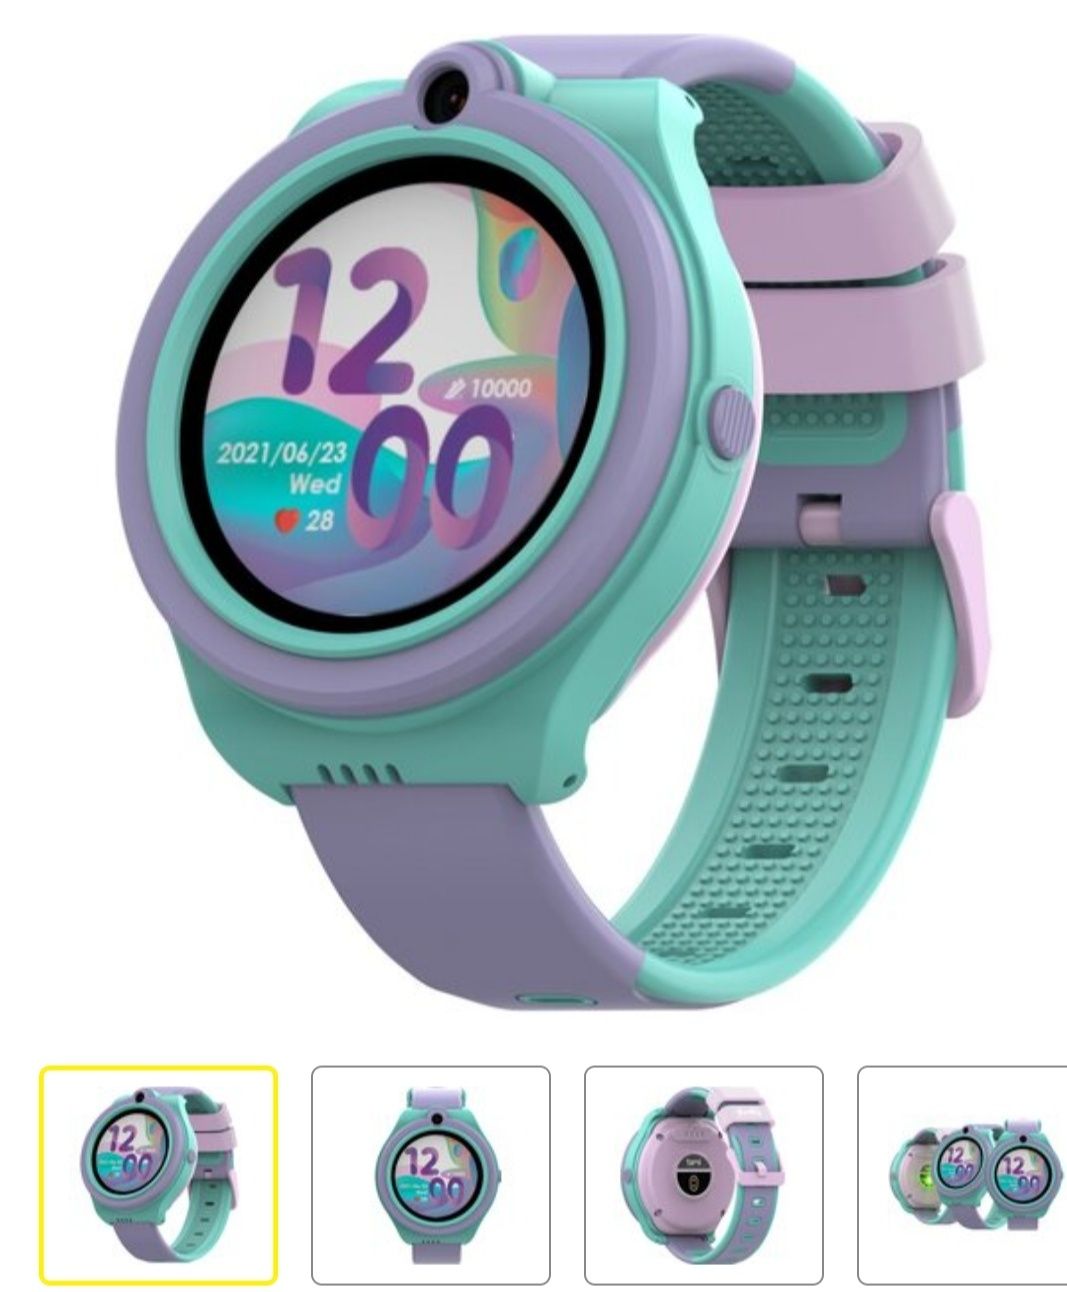 Smartwatch BEMI linko purpurowy dziewczęcy